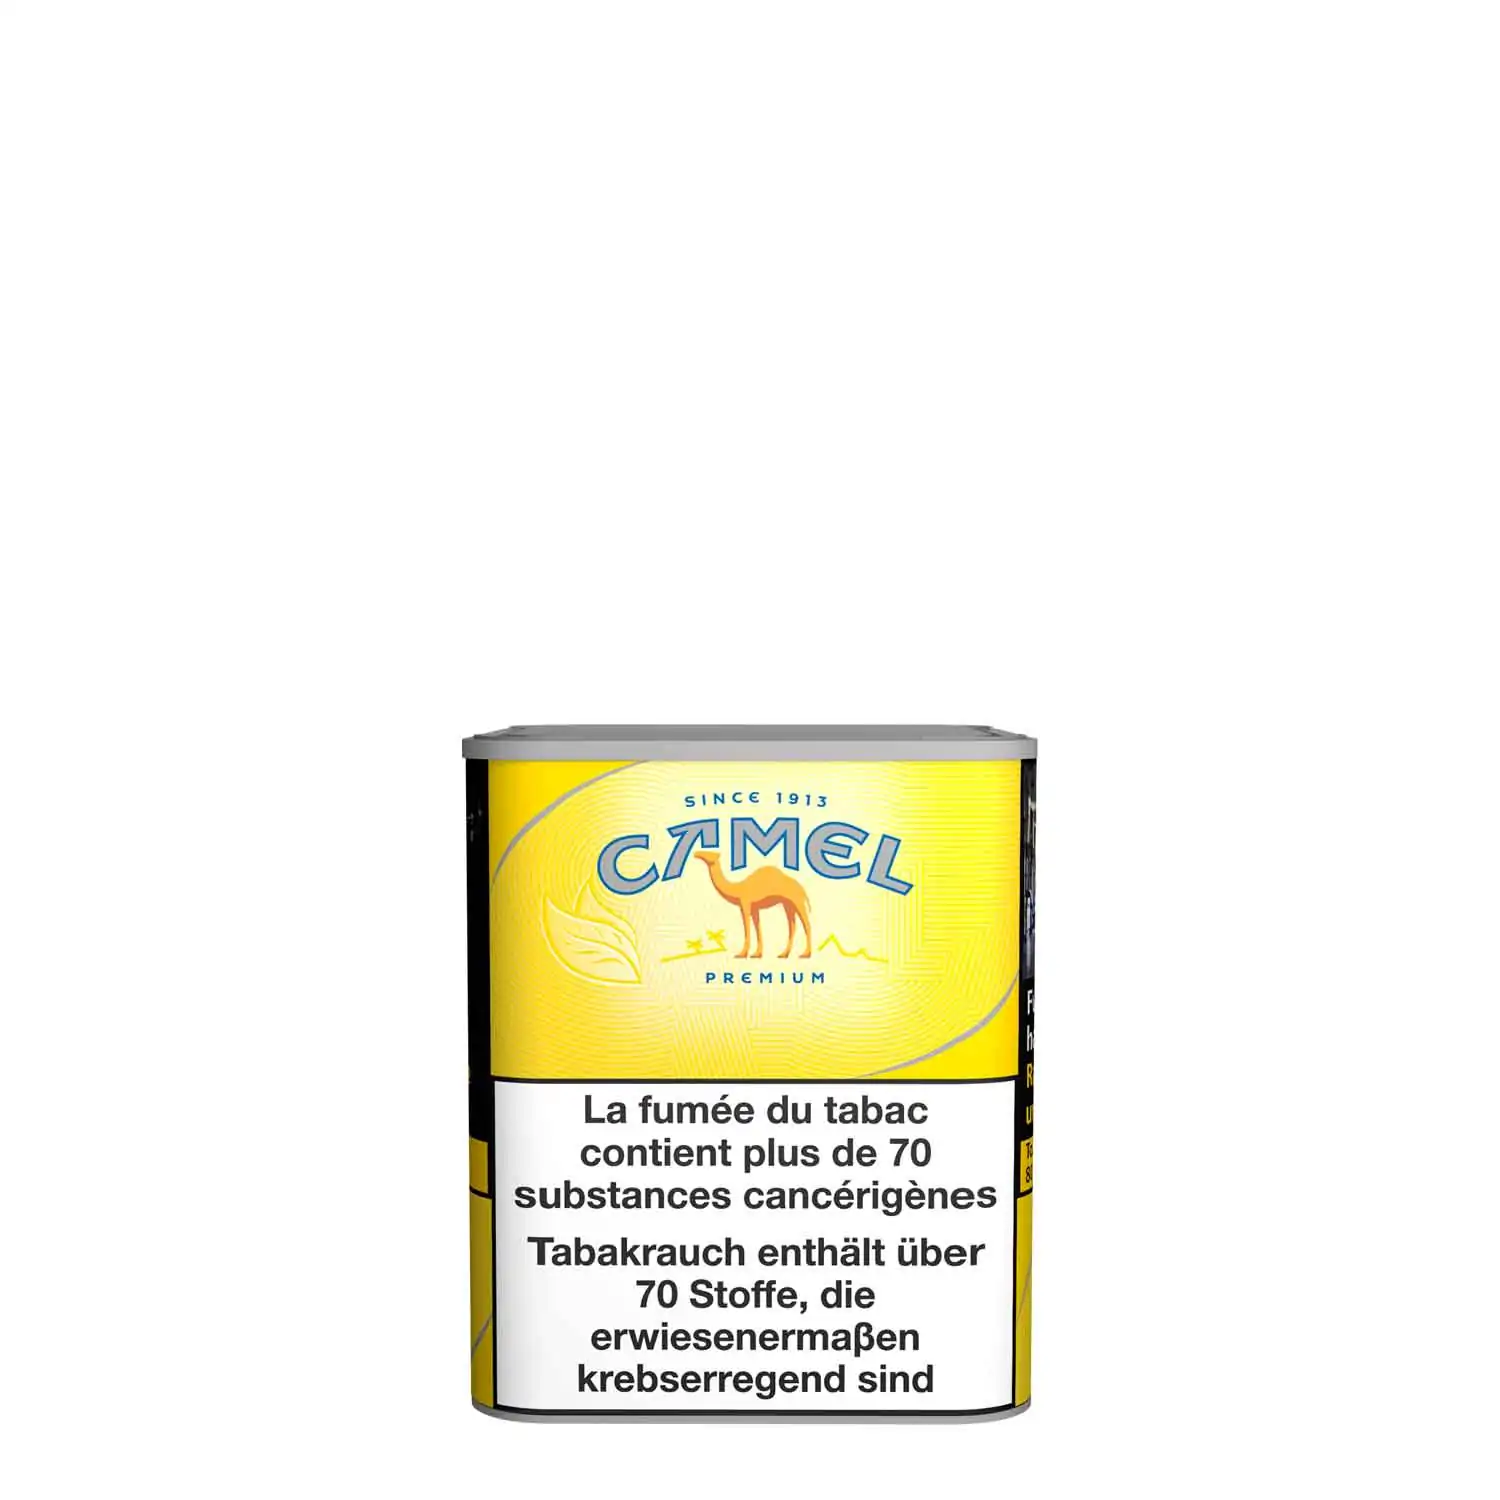 Camel premium jaune 190g - Buy at Real Tobacco